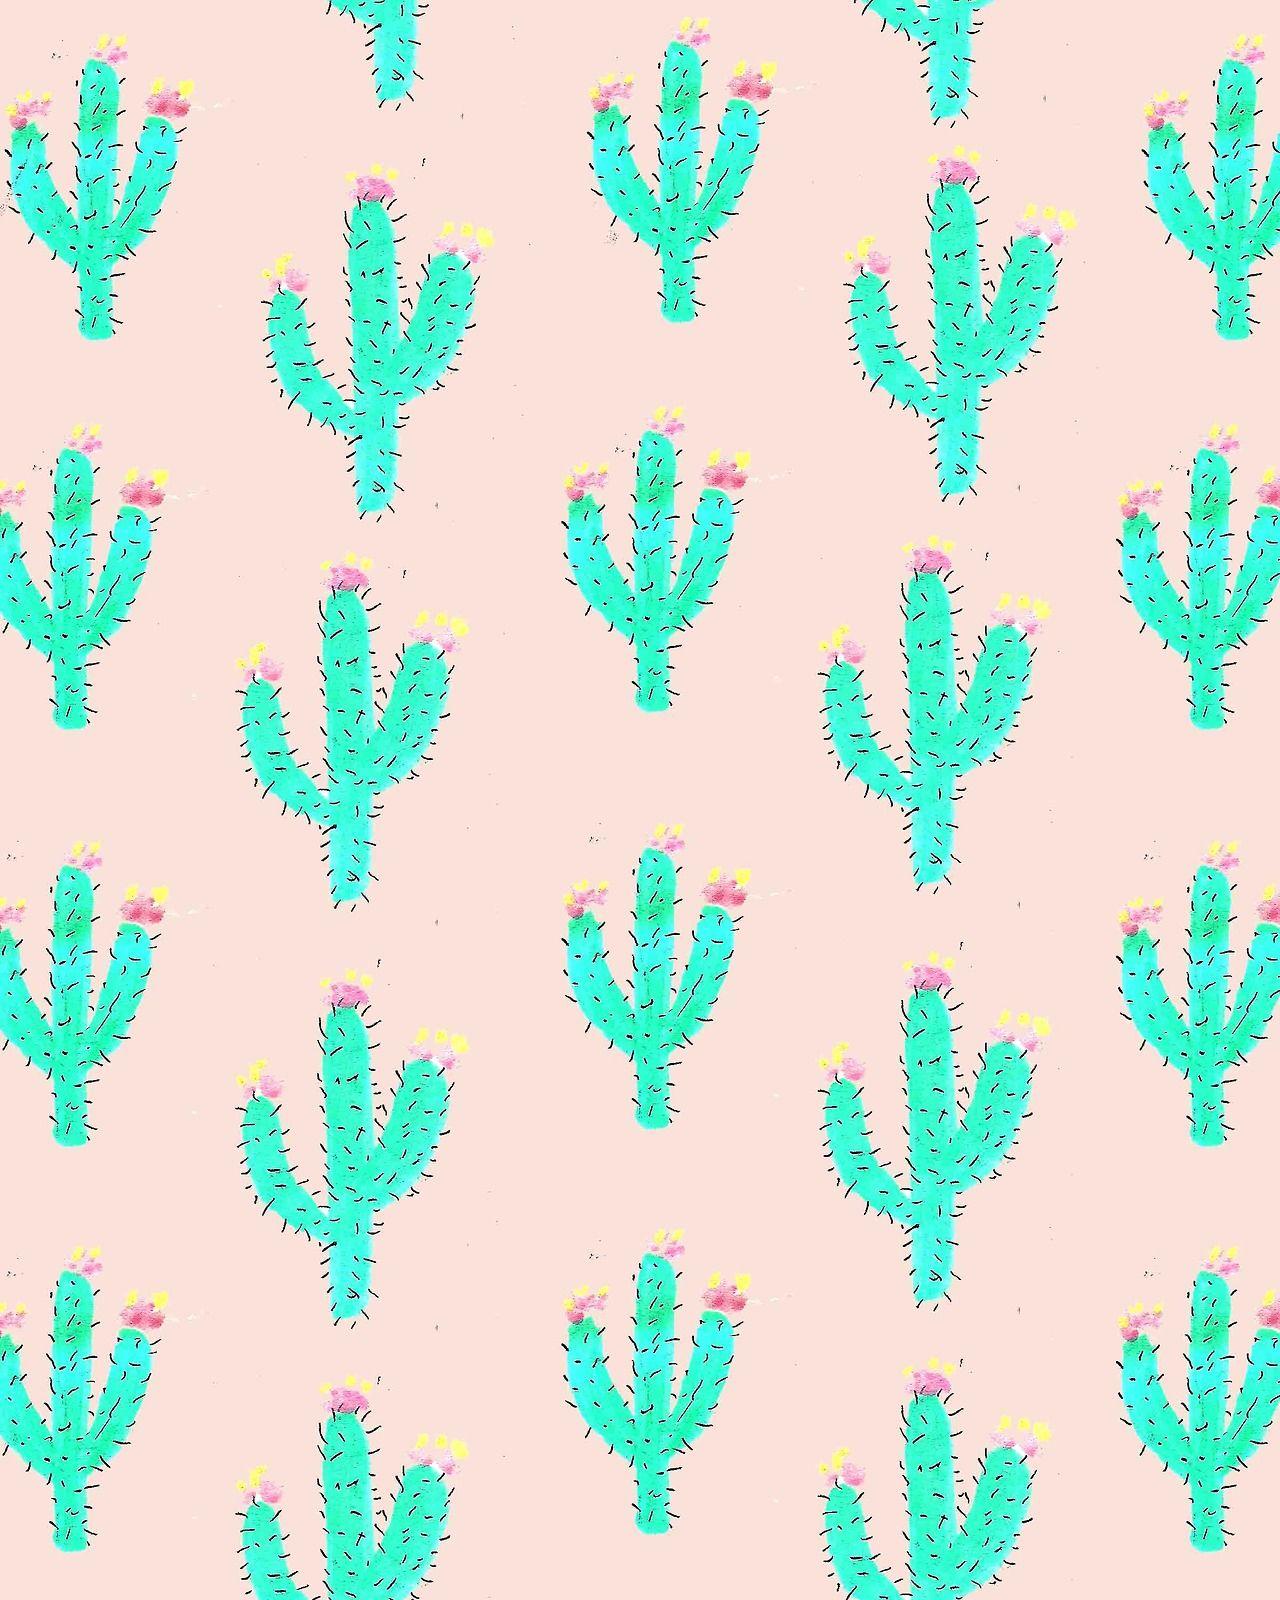 Drawn cactus tumblr wallpaper and in color drawn cactus